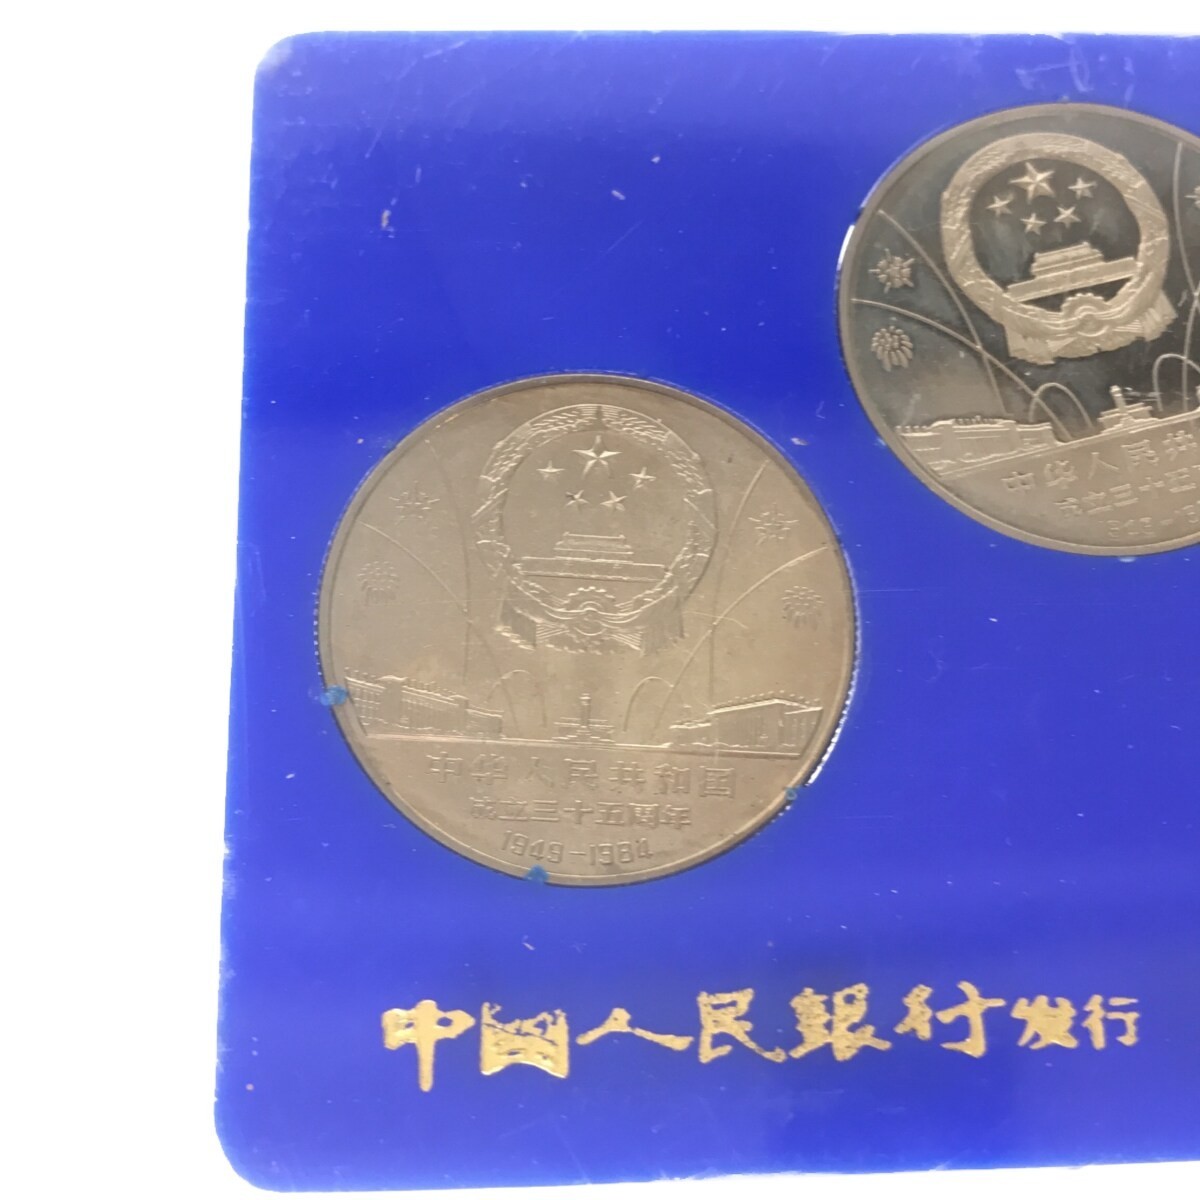 【希少品】中華人民共和国成立35周年 一円白銅貨 記念貨幣セット 1949-1984 3種セット 中国コイン 中国人民銀行 中国造幣谷司 限定品 M661_画像6